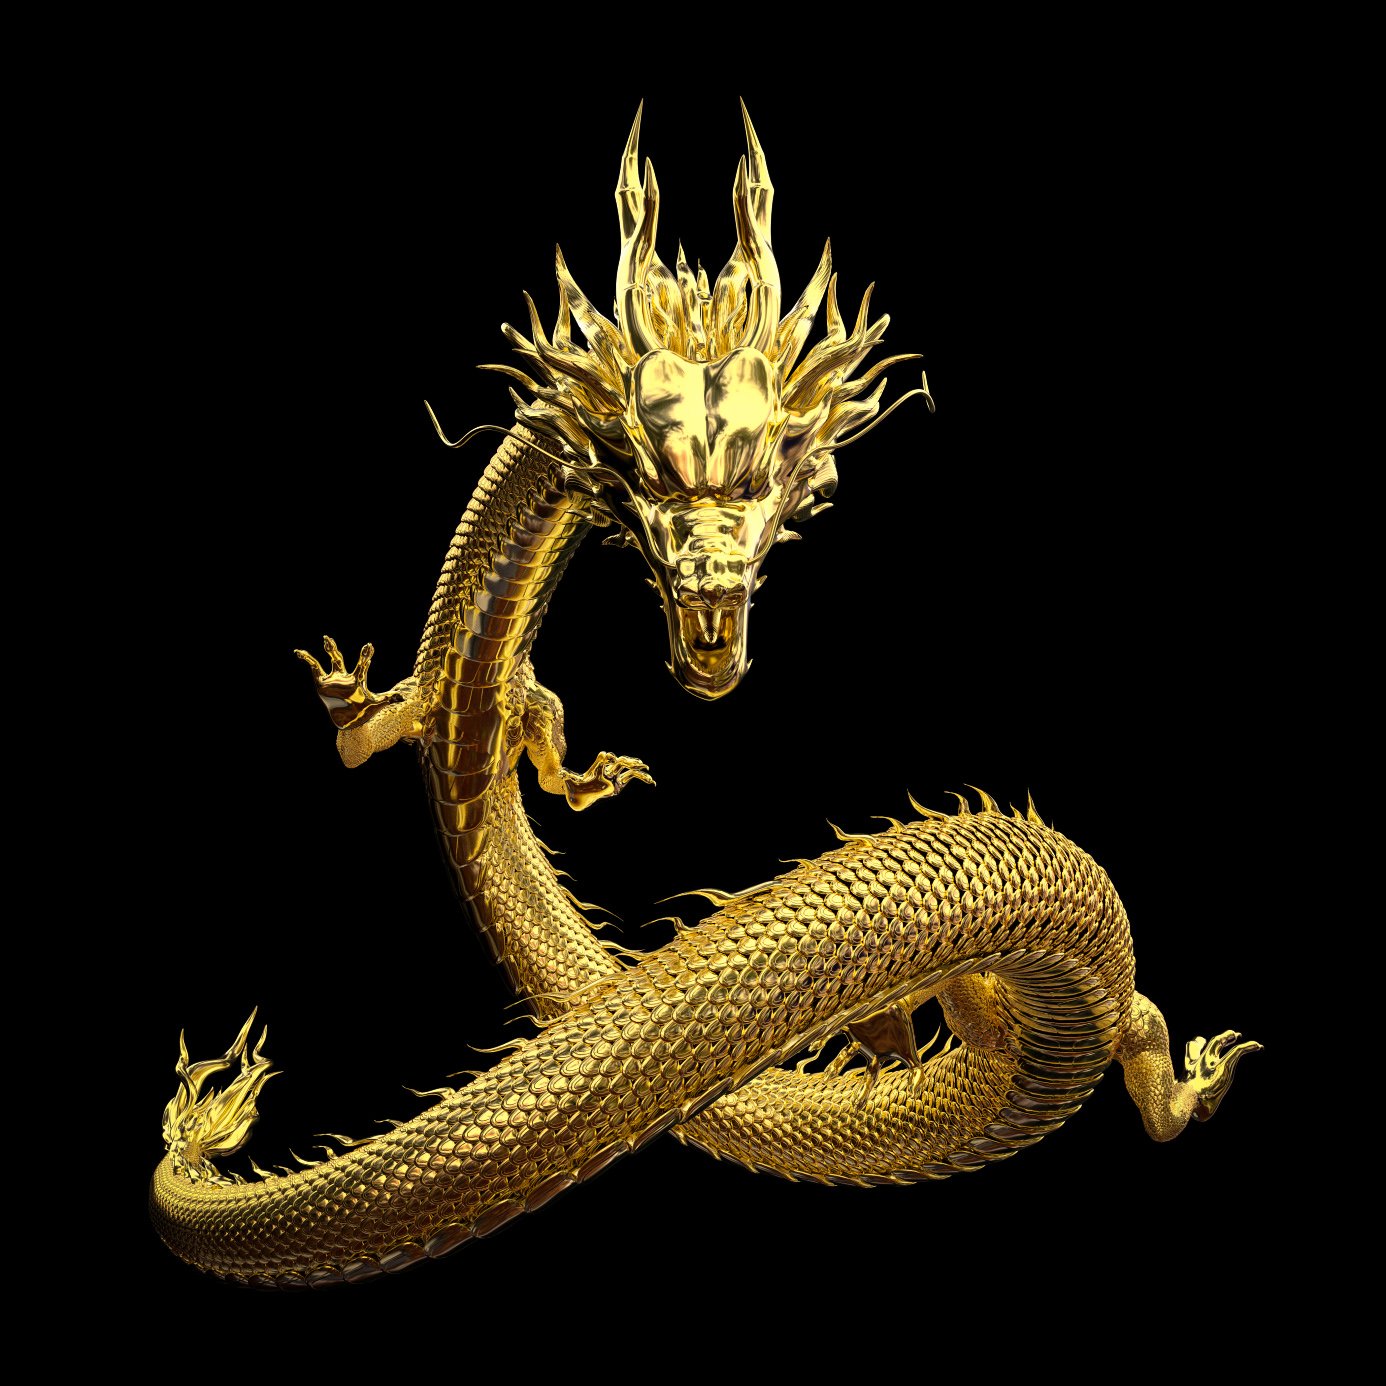 Hiina draakon, tuntud ka kui kops, on Hiina mütoloogias legendaarne olend.